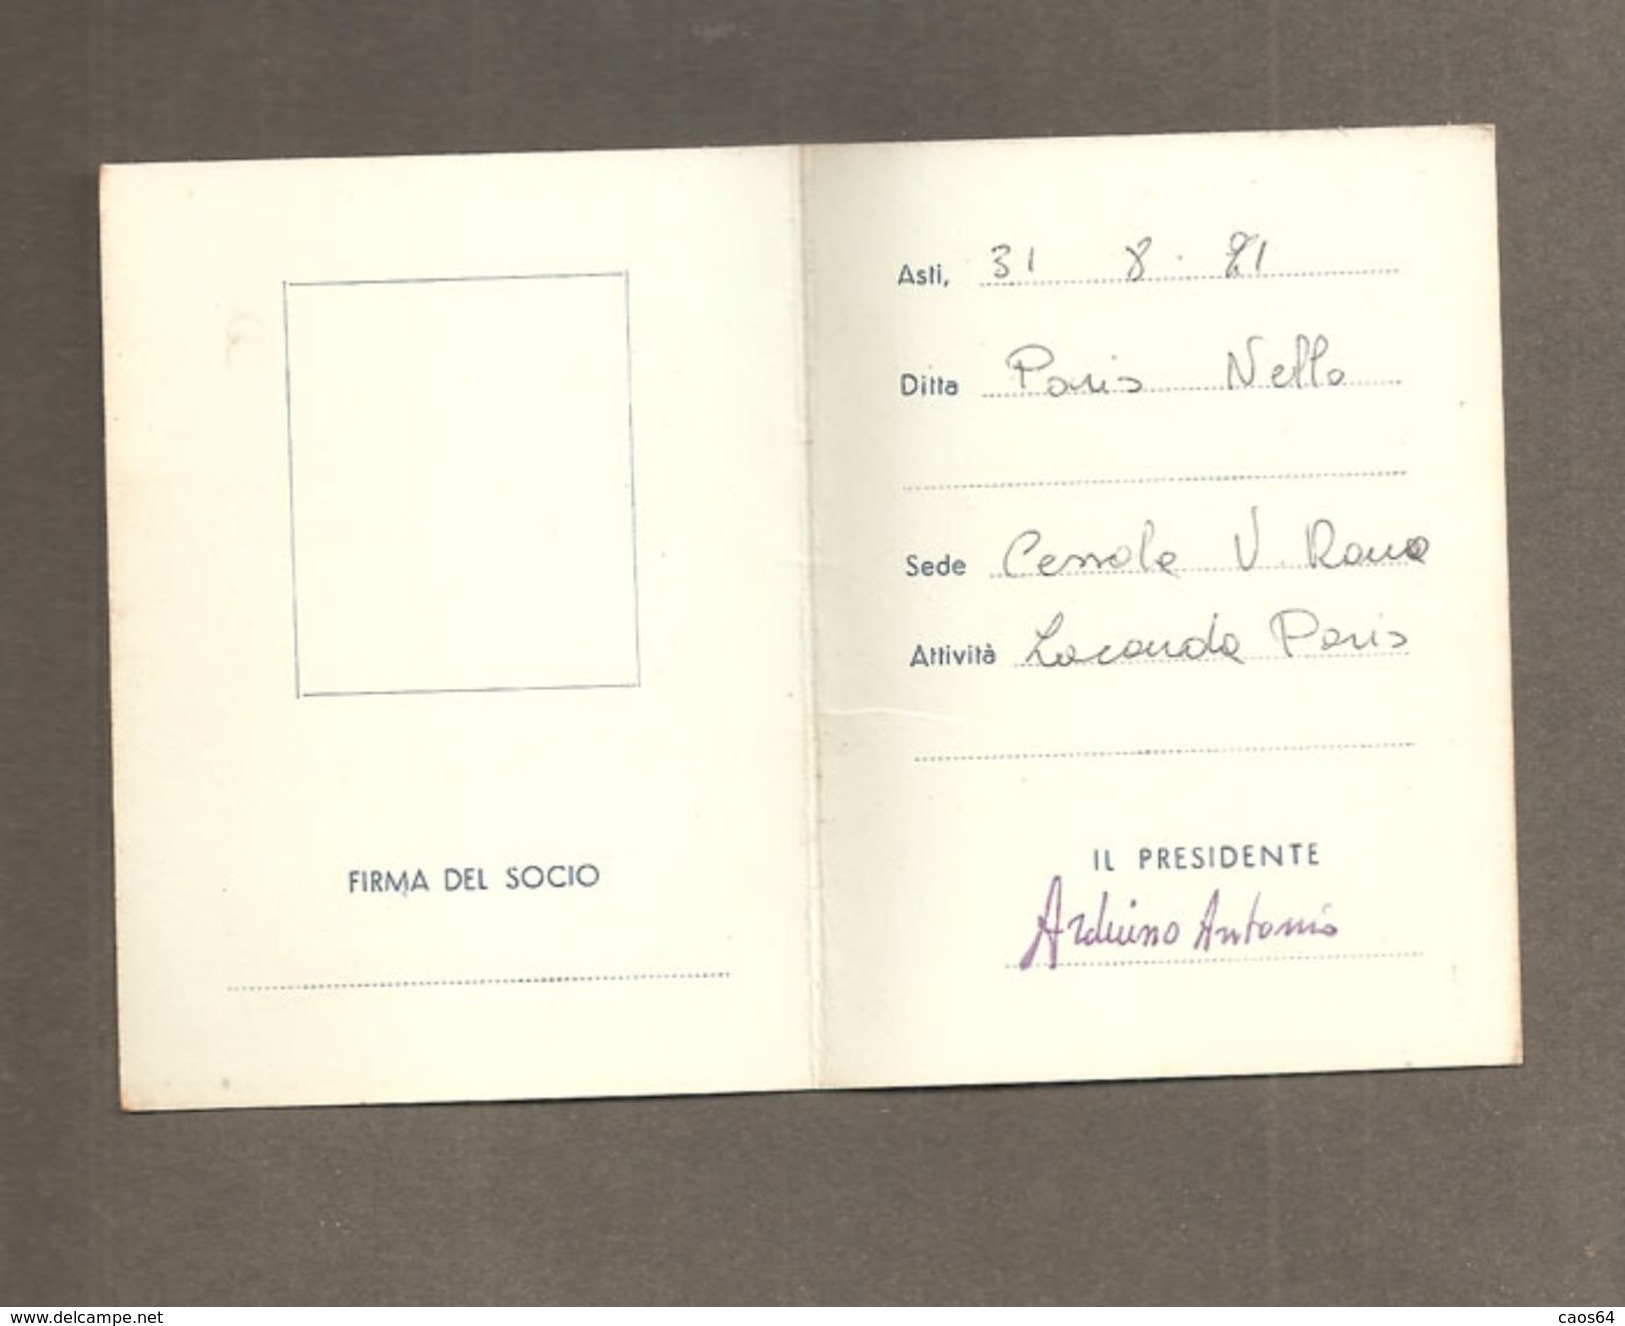 TESSERA UNIONE COMMERCIANTI DELLA PROVINCIA DI ASTI - 1971 - Mitgliedskarten